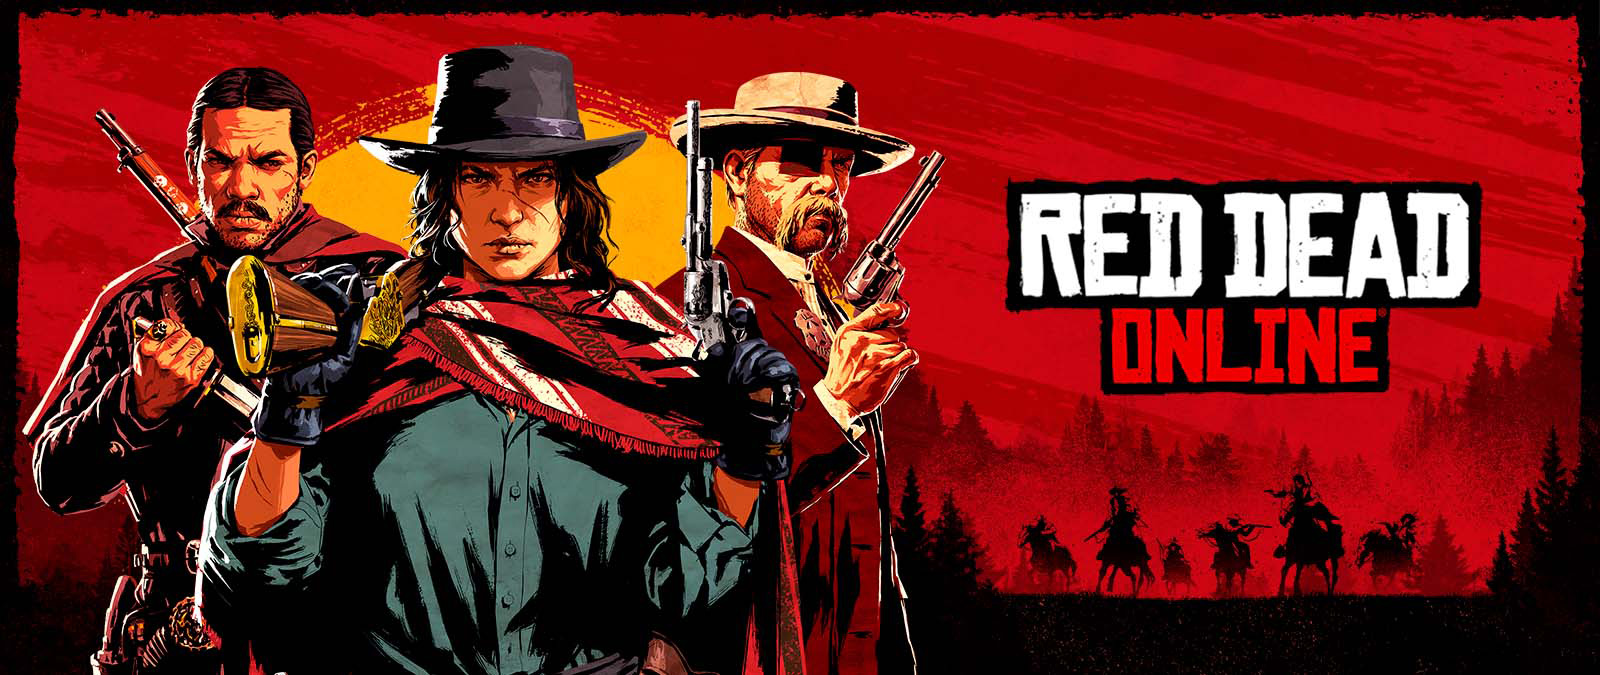 Red Dead Online. Tre karaktärer som håller vapen framför en solnedgång och skuggor av andra karaktärer på hästar